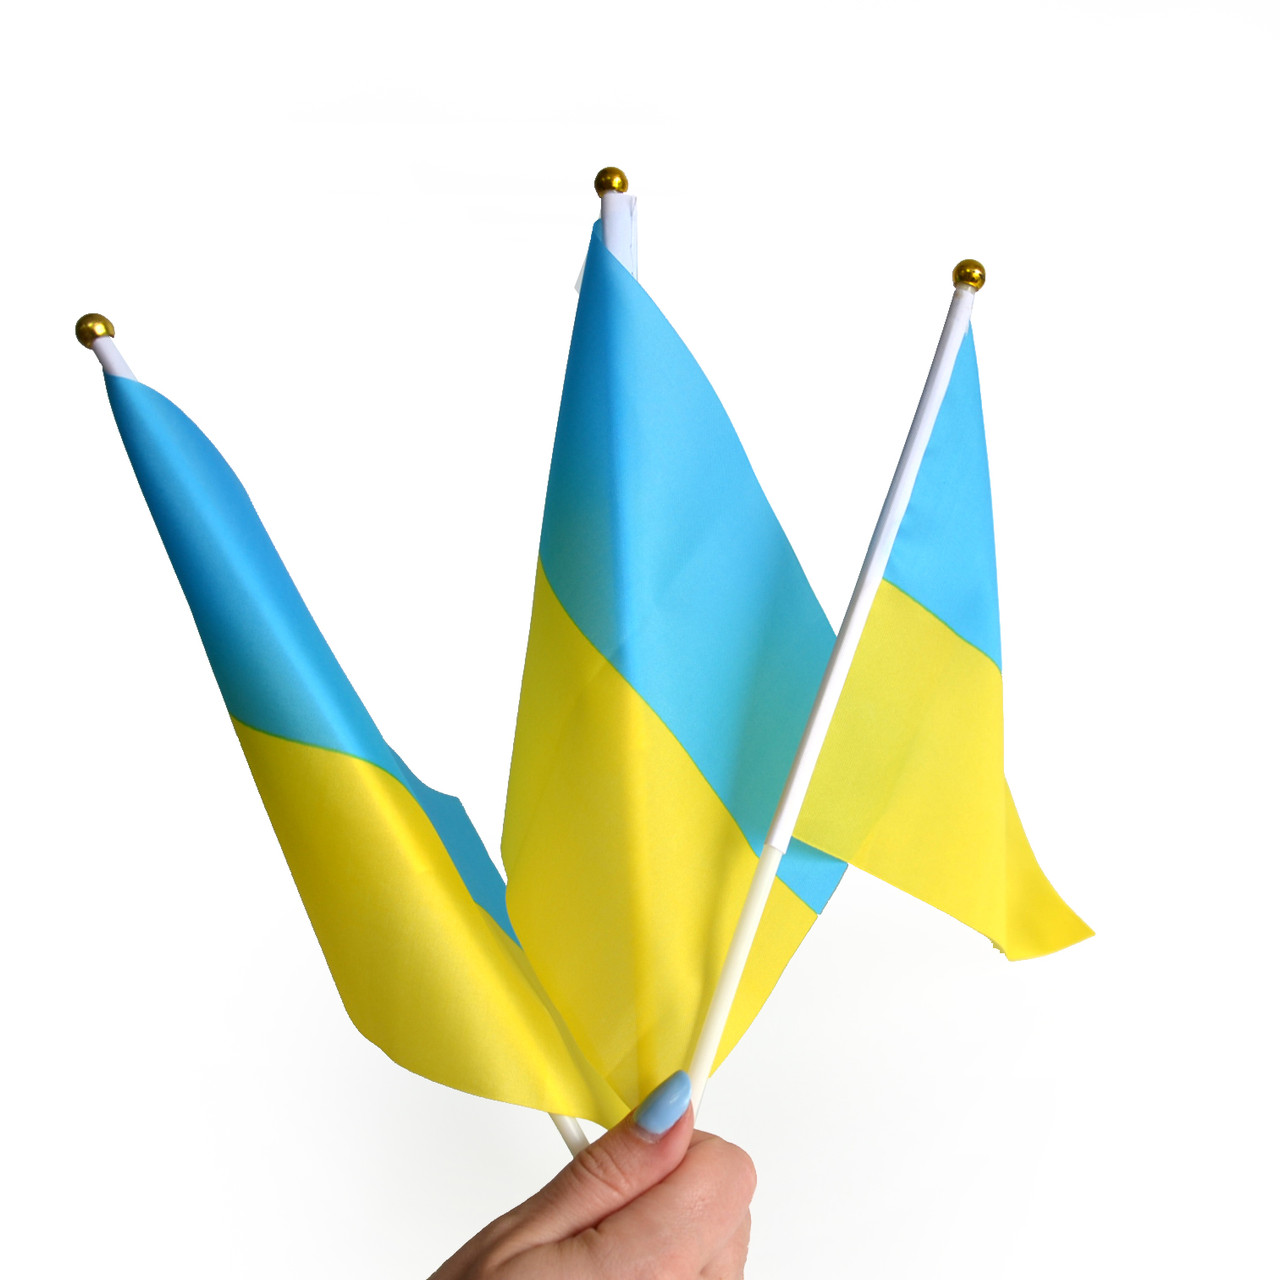 Прапорець України набір із 3-х штук поліестер 14*21 см на паличці з присоскою, фото 1